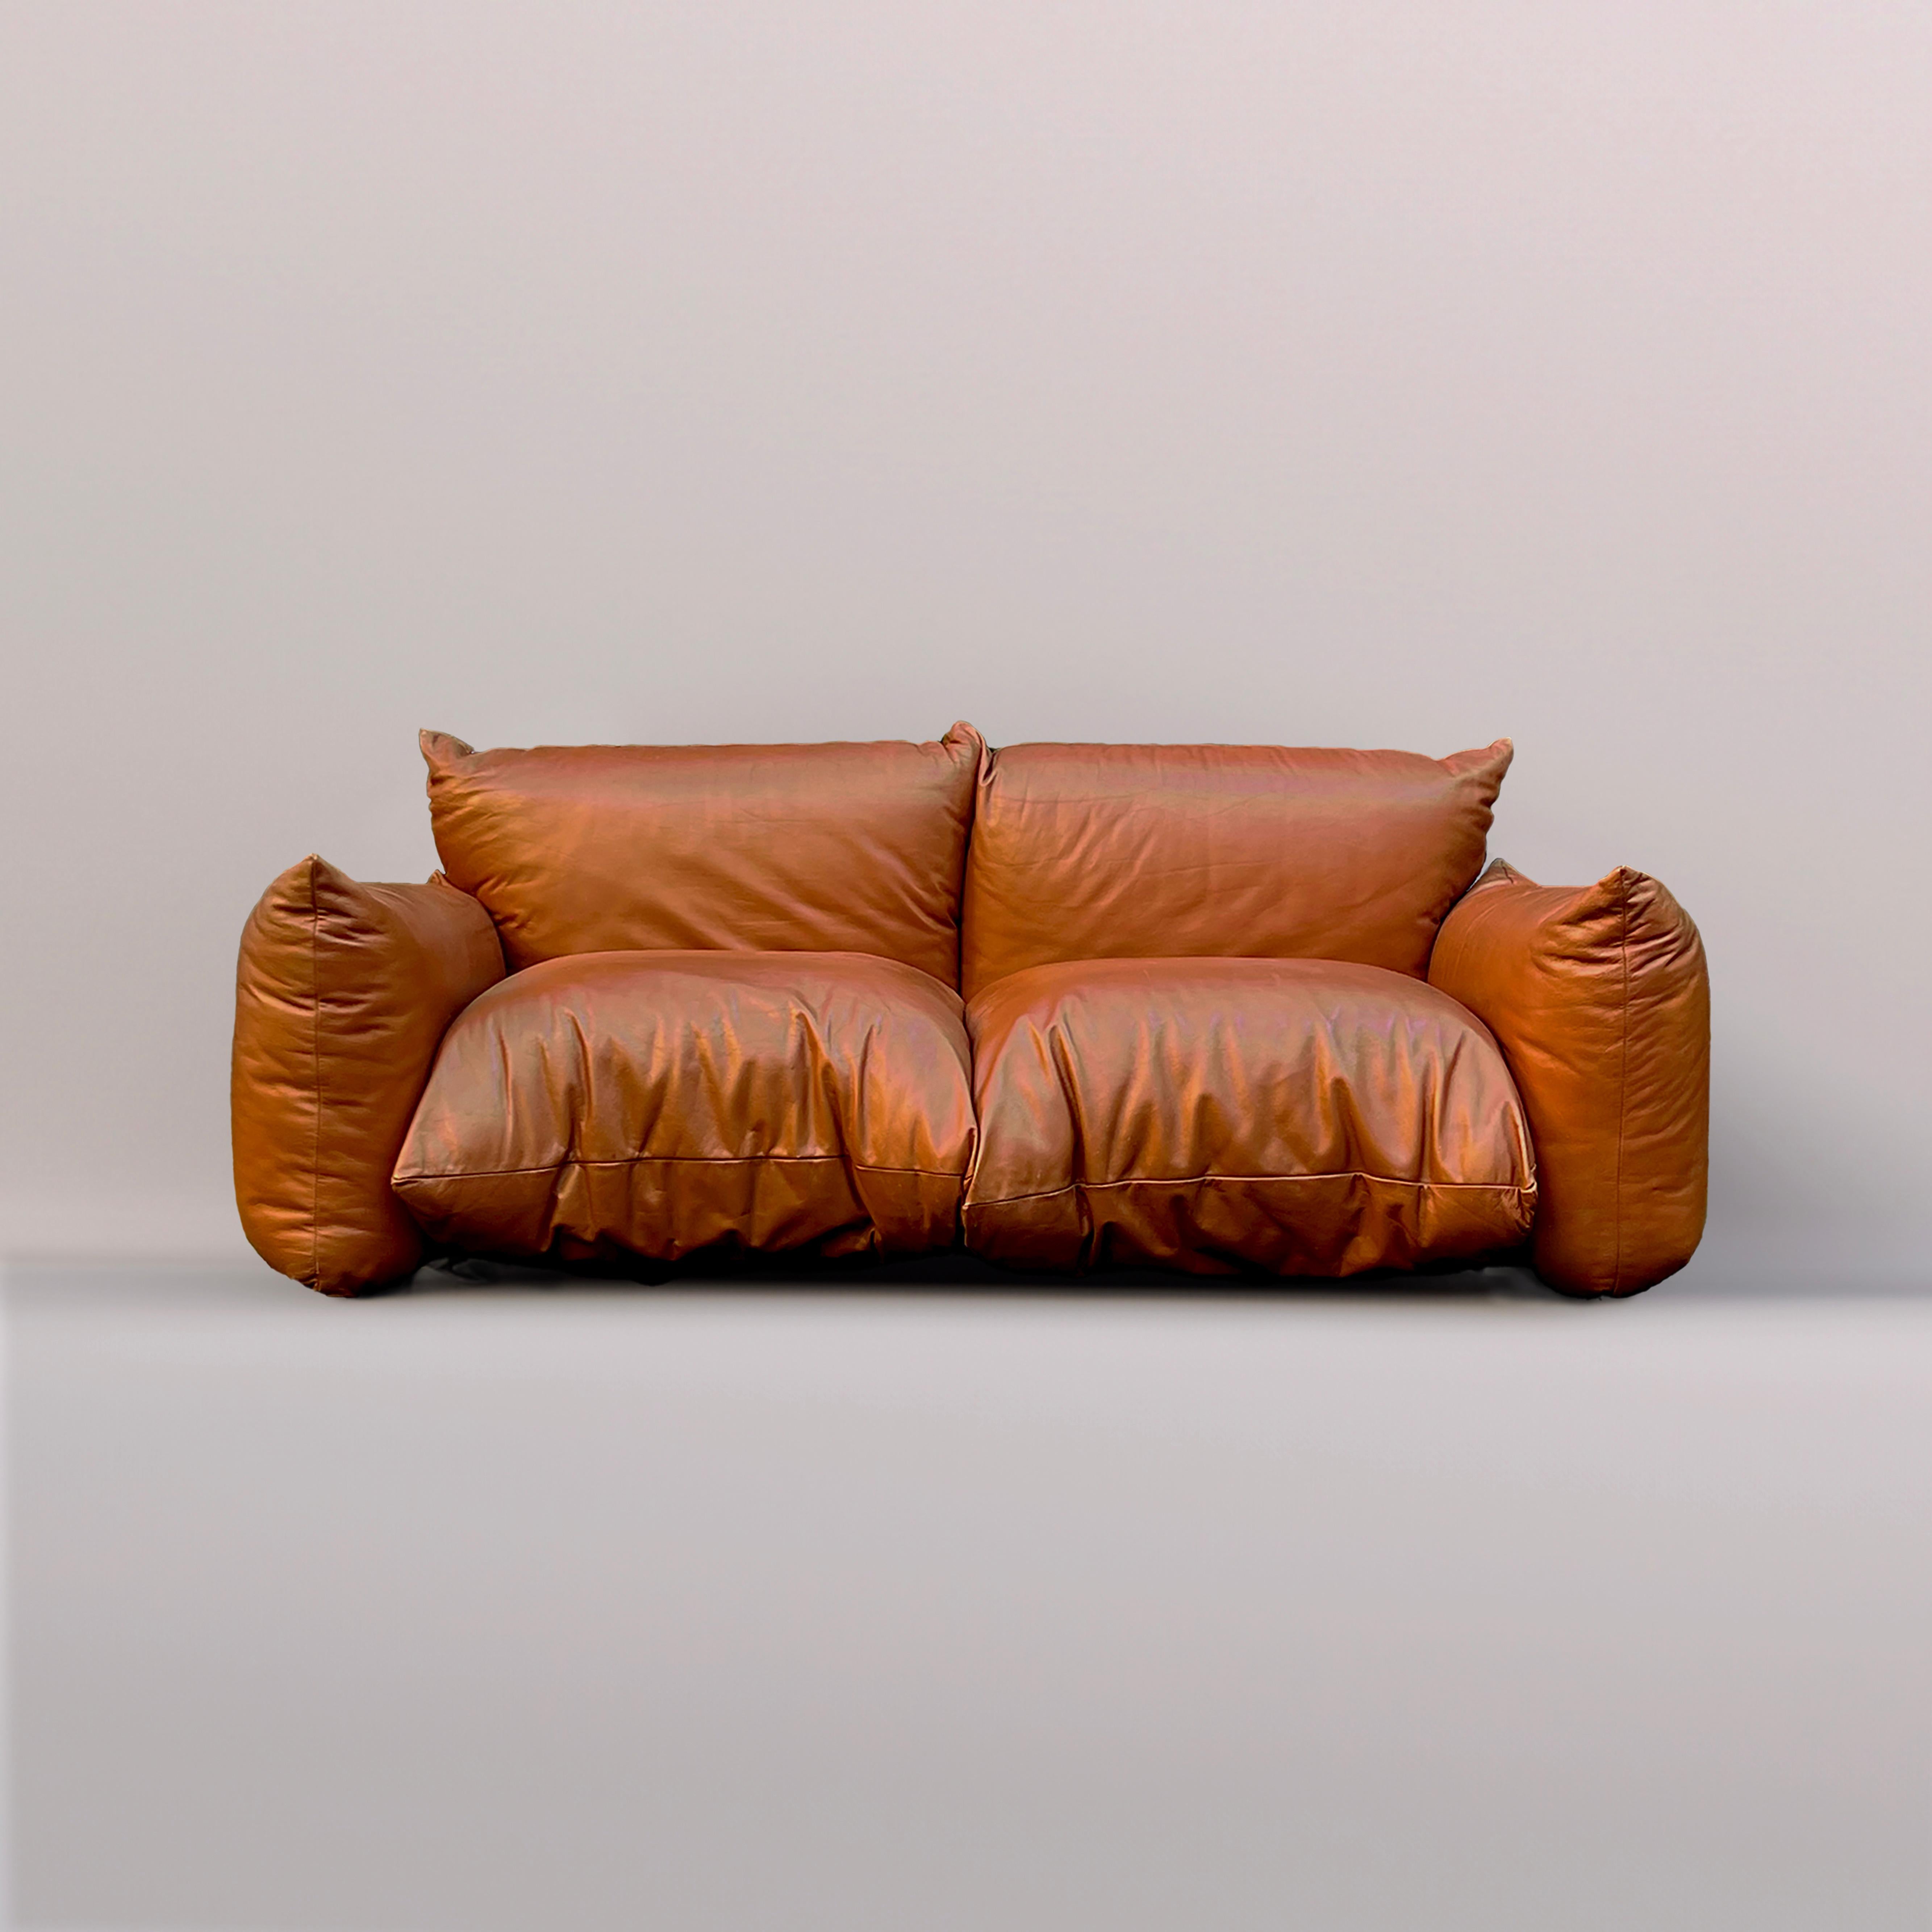 Mario Marenco, en collaboration avec le célèbre fabricant de meubles italien Arflex, a présenté le canapé deux places 